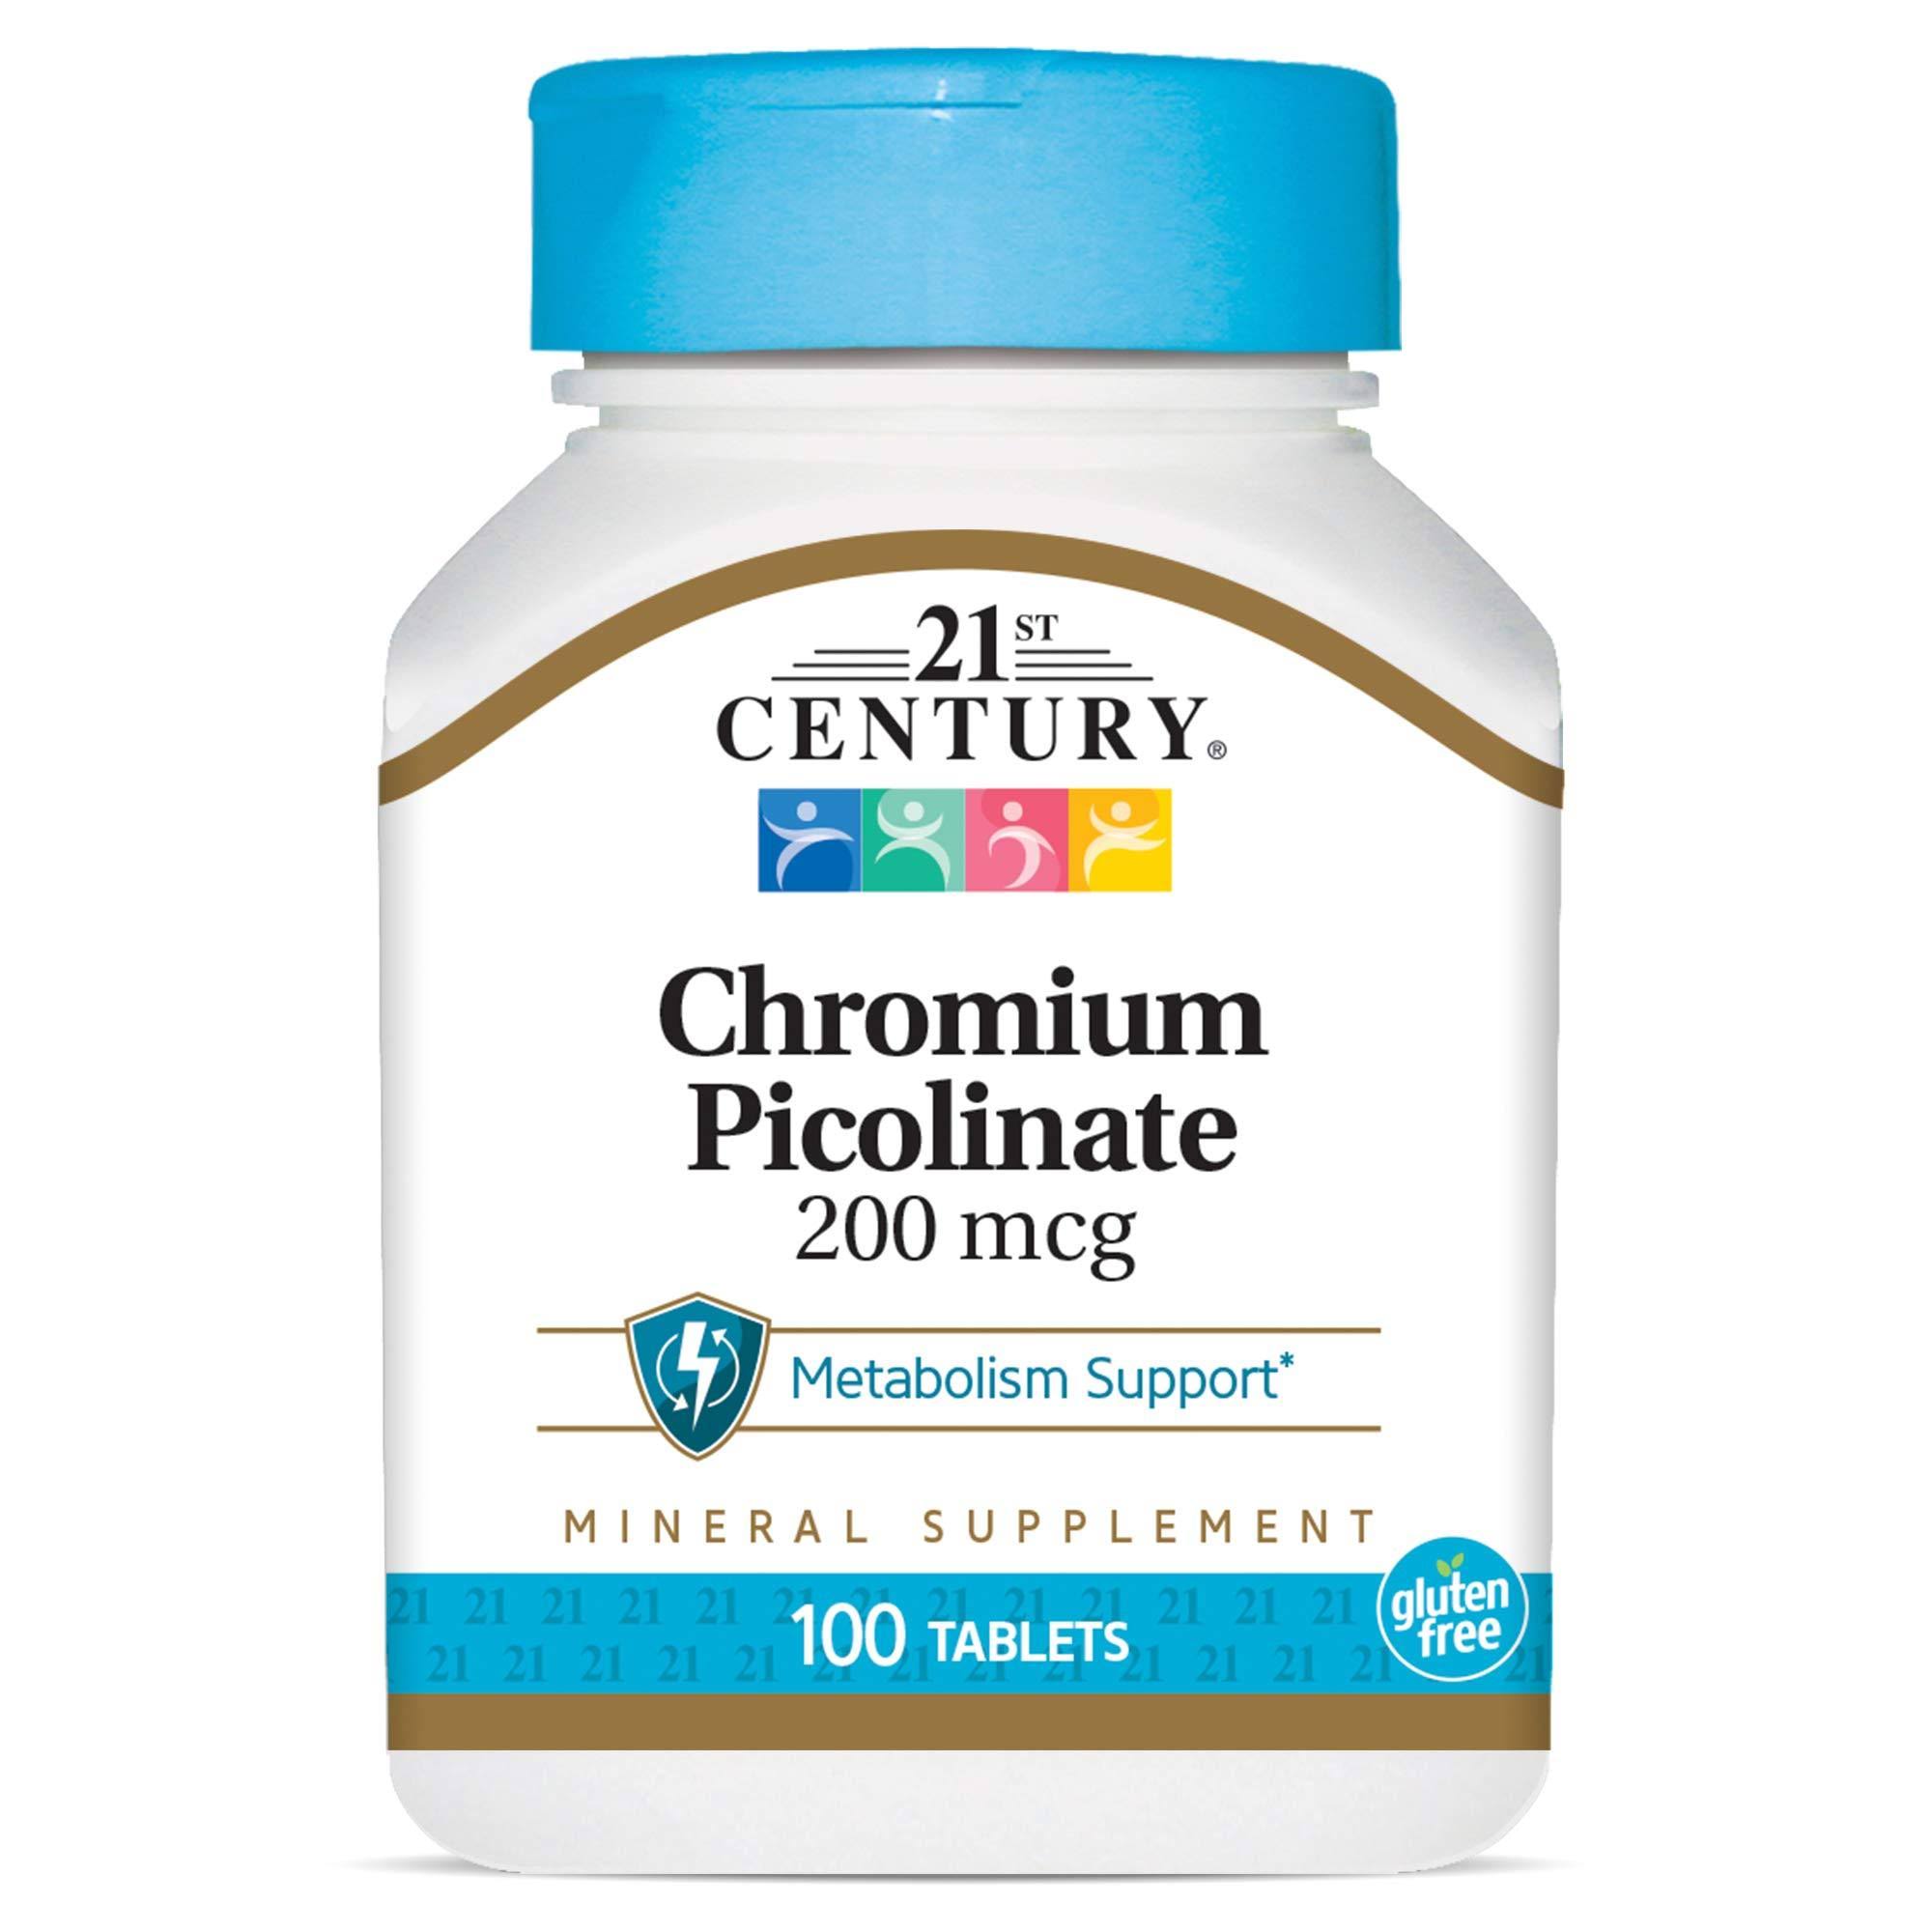 21st Century Chromium Picolinate Vitamin Tablets - 100ct, 200 mcg